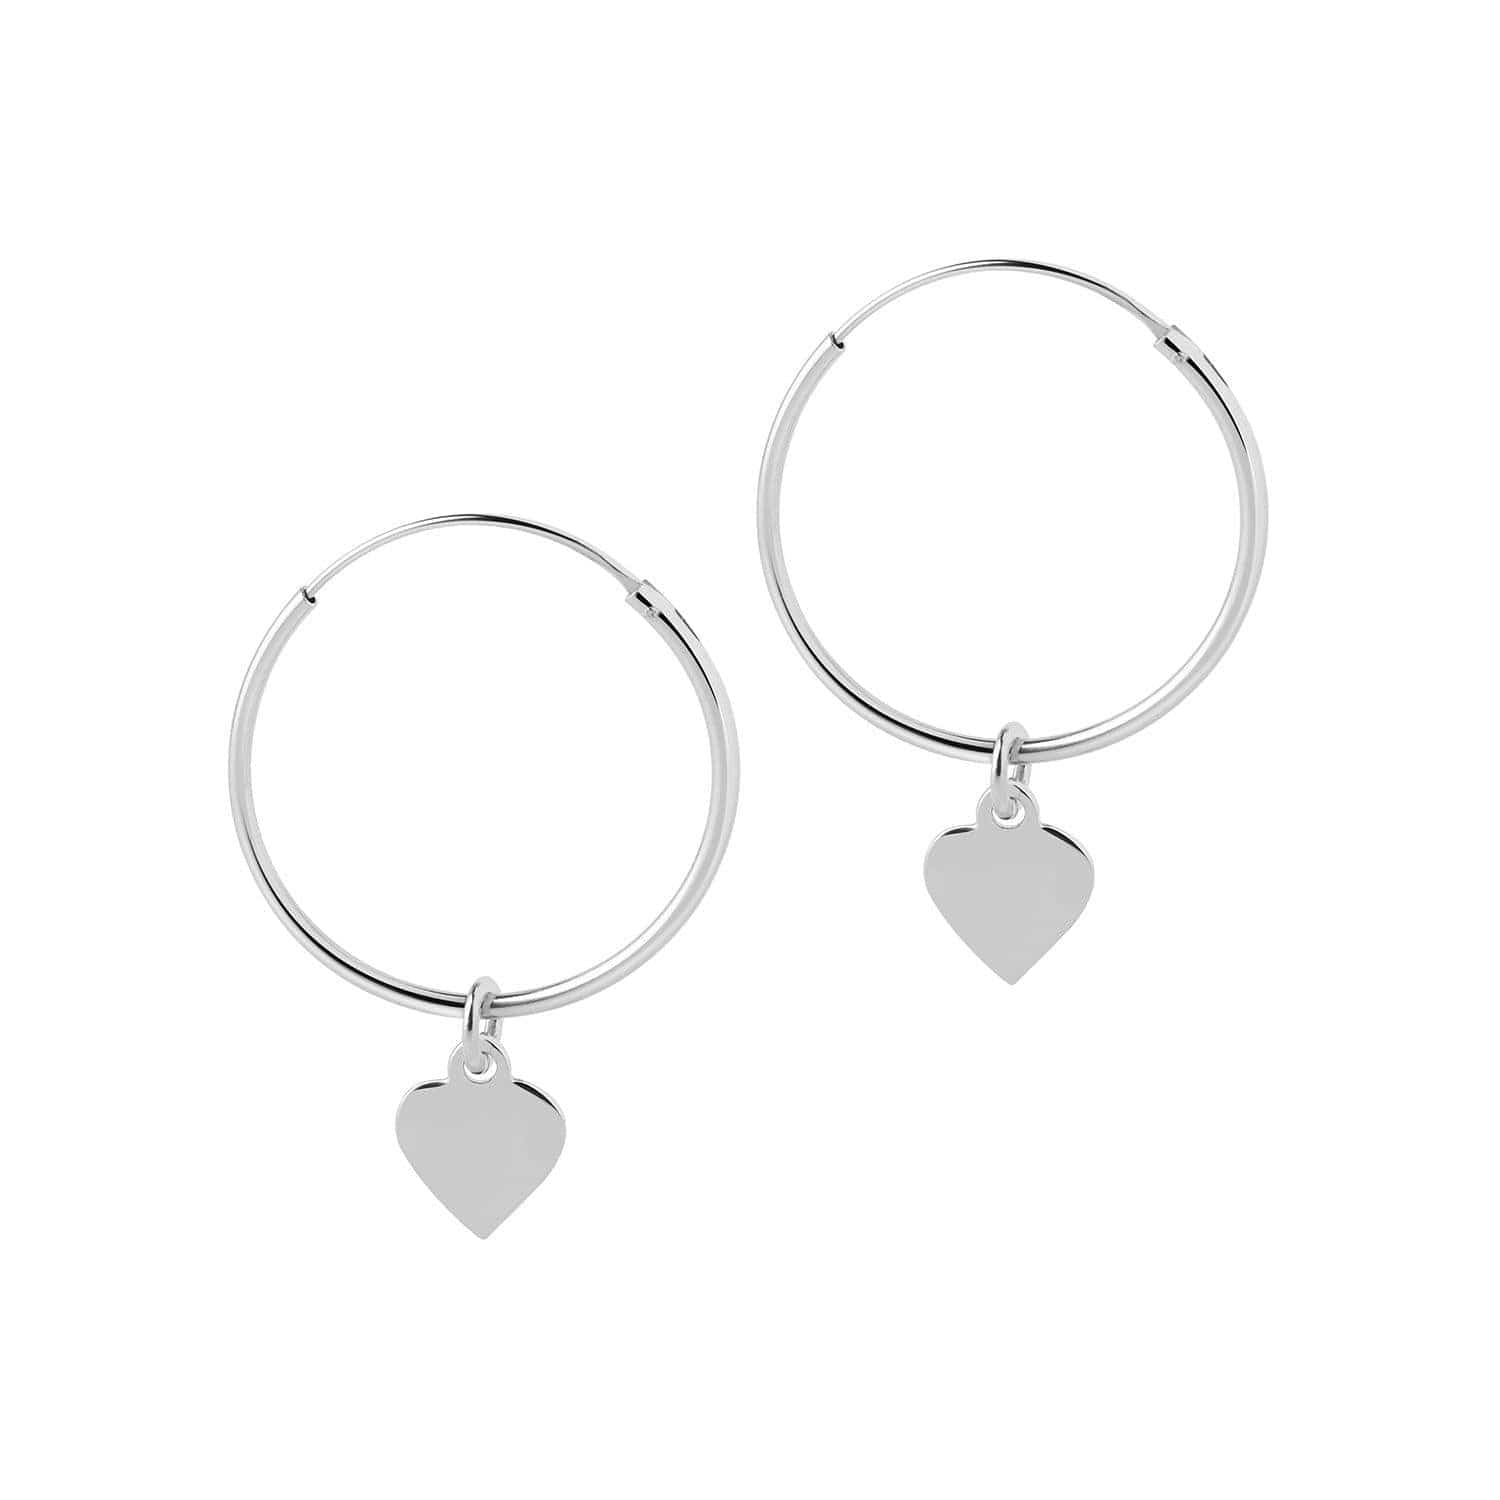 Silver Hoop Earrings with Heart 22 MM